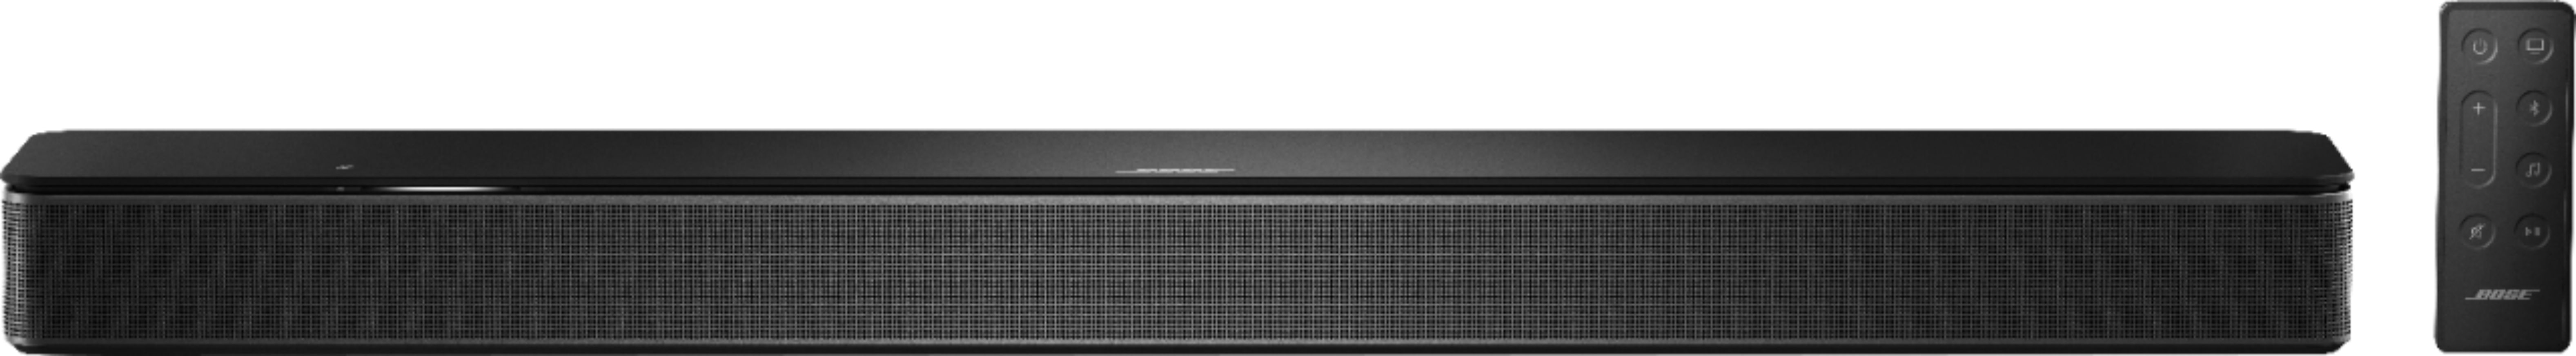 Bose – Smart Soundbar 300 with Voice Assistant – Black